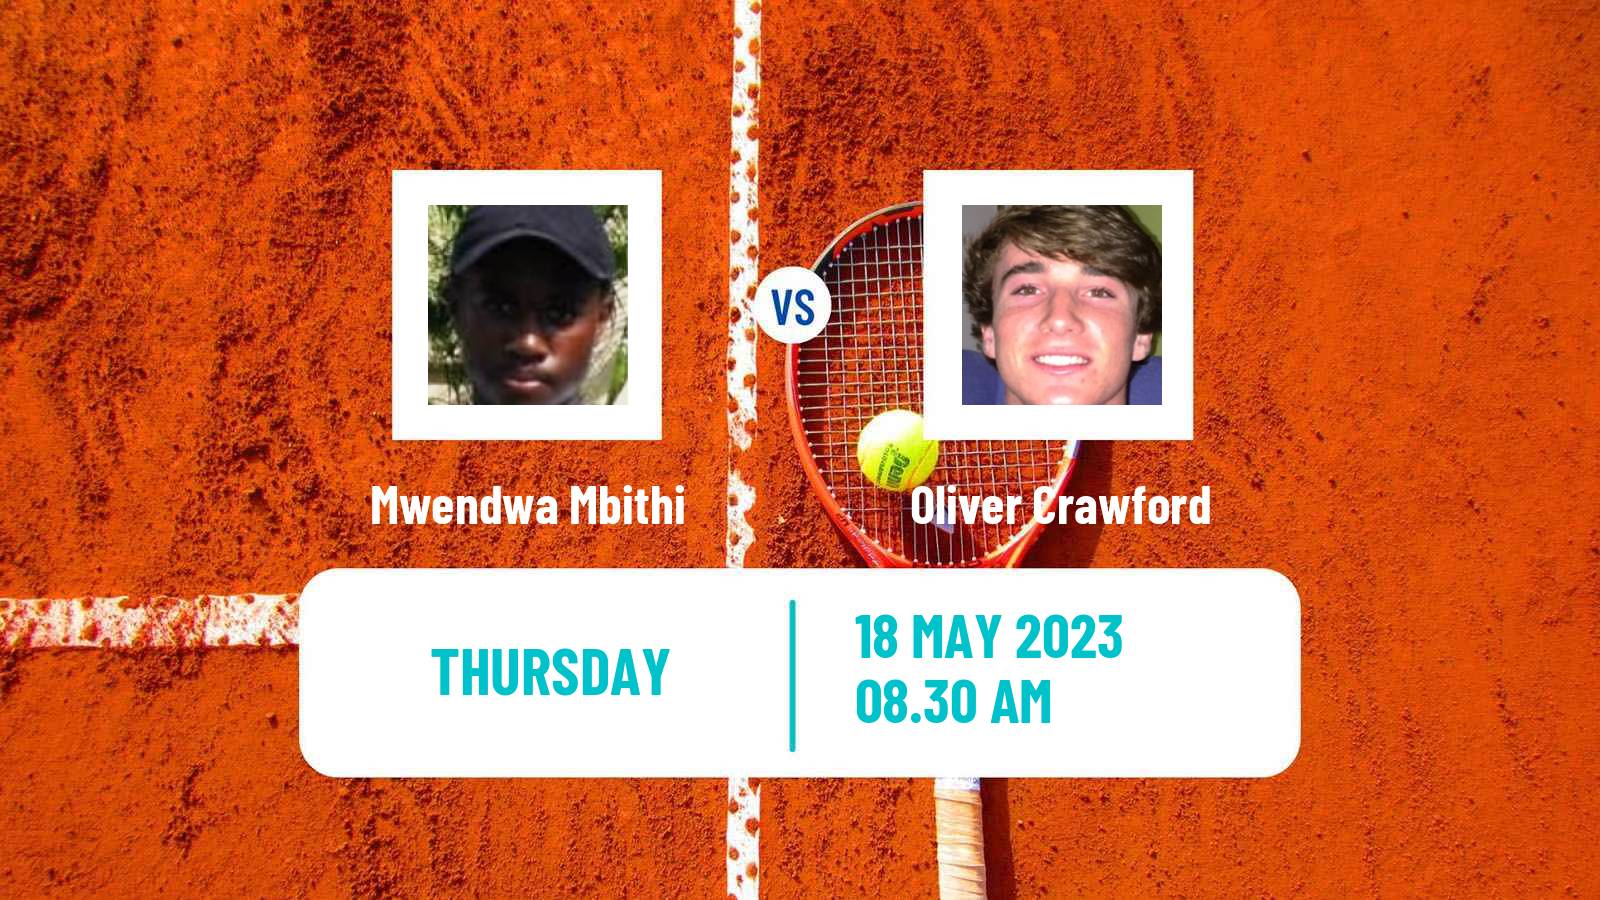 Tennis ITF M25 Kursumlijska Banja 2 Men Mwendwa Mbithi - Oliver Crawford